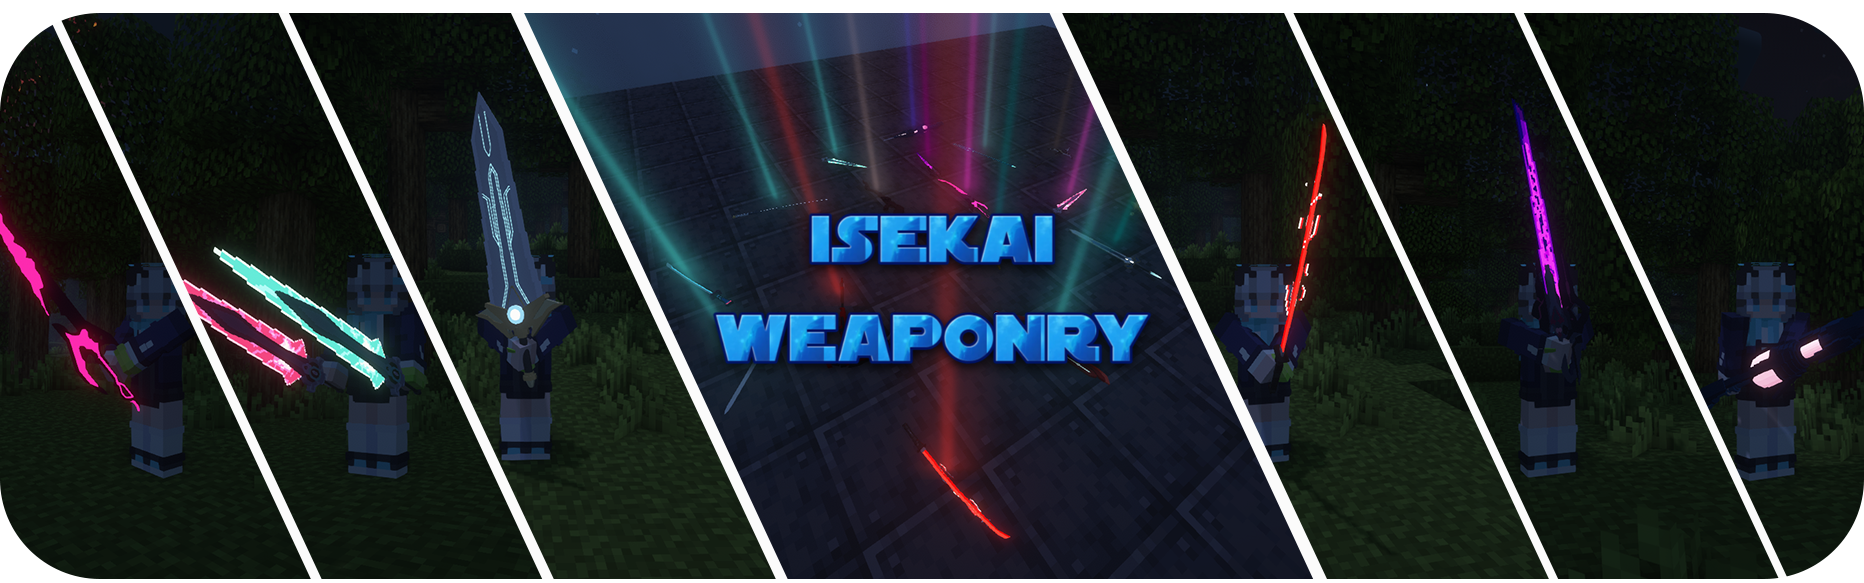 Isekai Weaponry